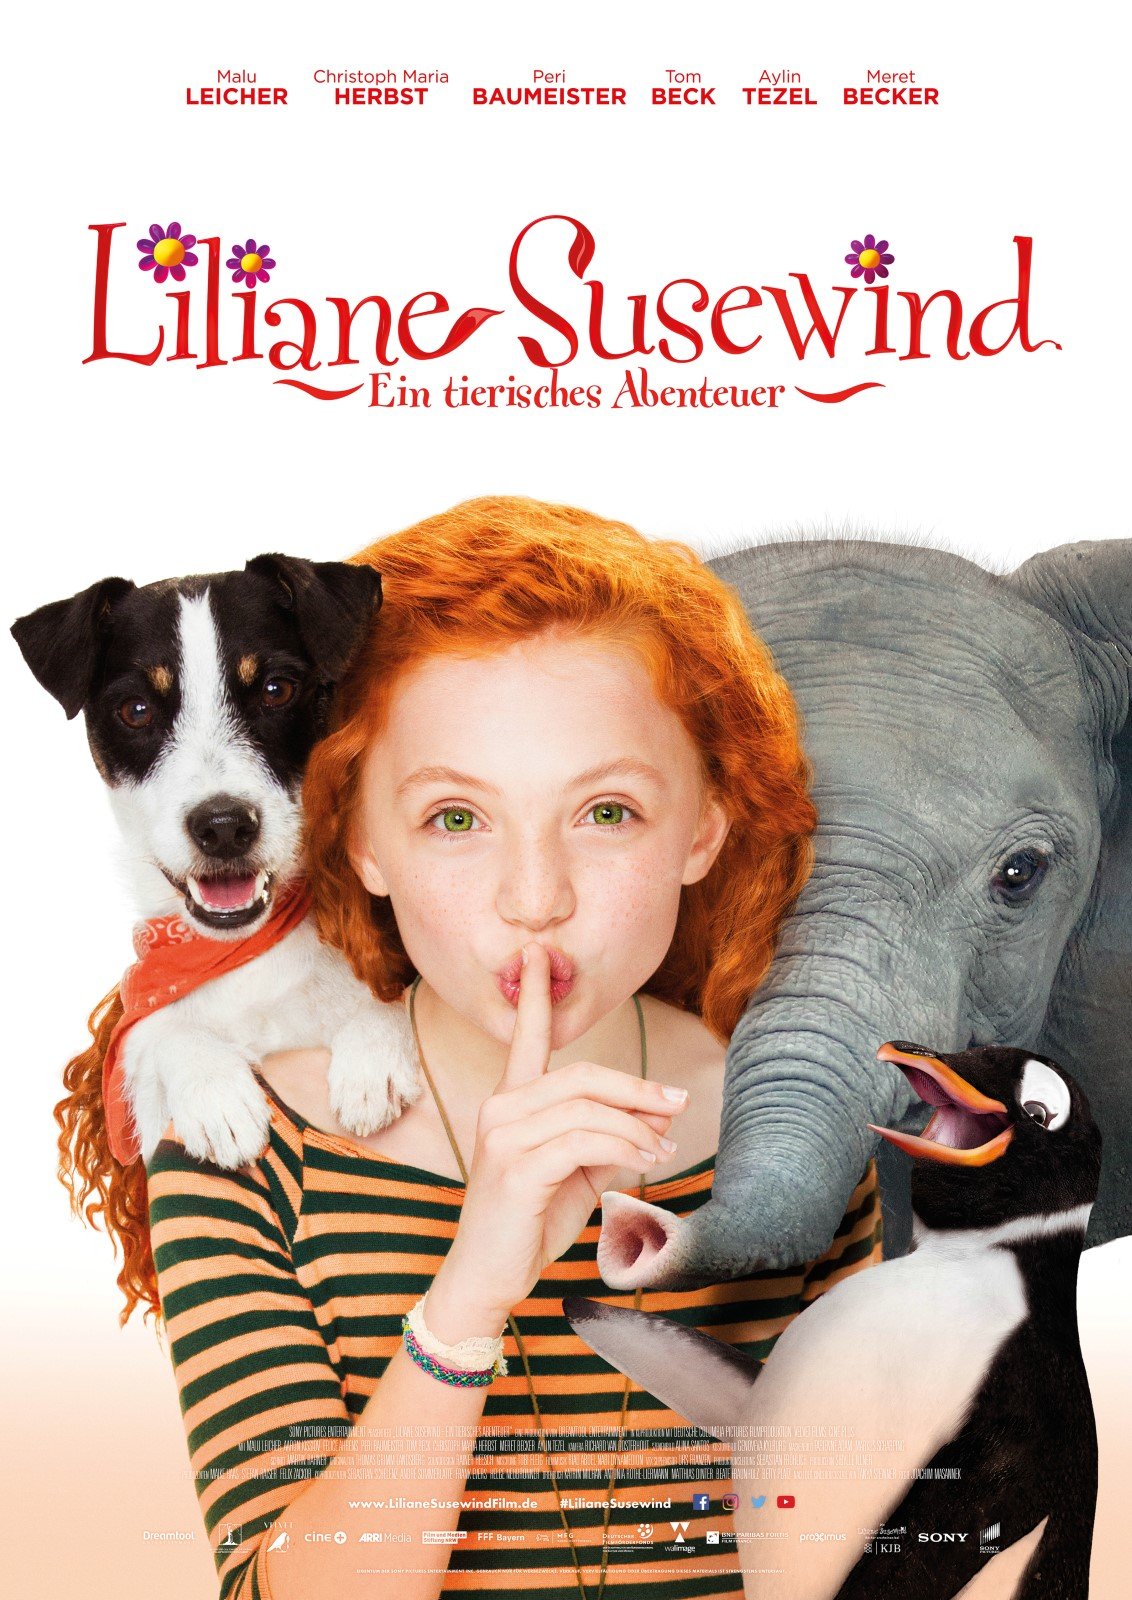 Liliane Susewind - Ein tierisches Abenteuer online schauen in HD als Stream & Download